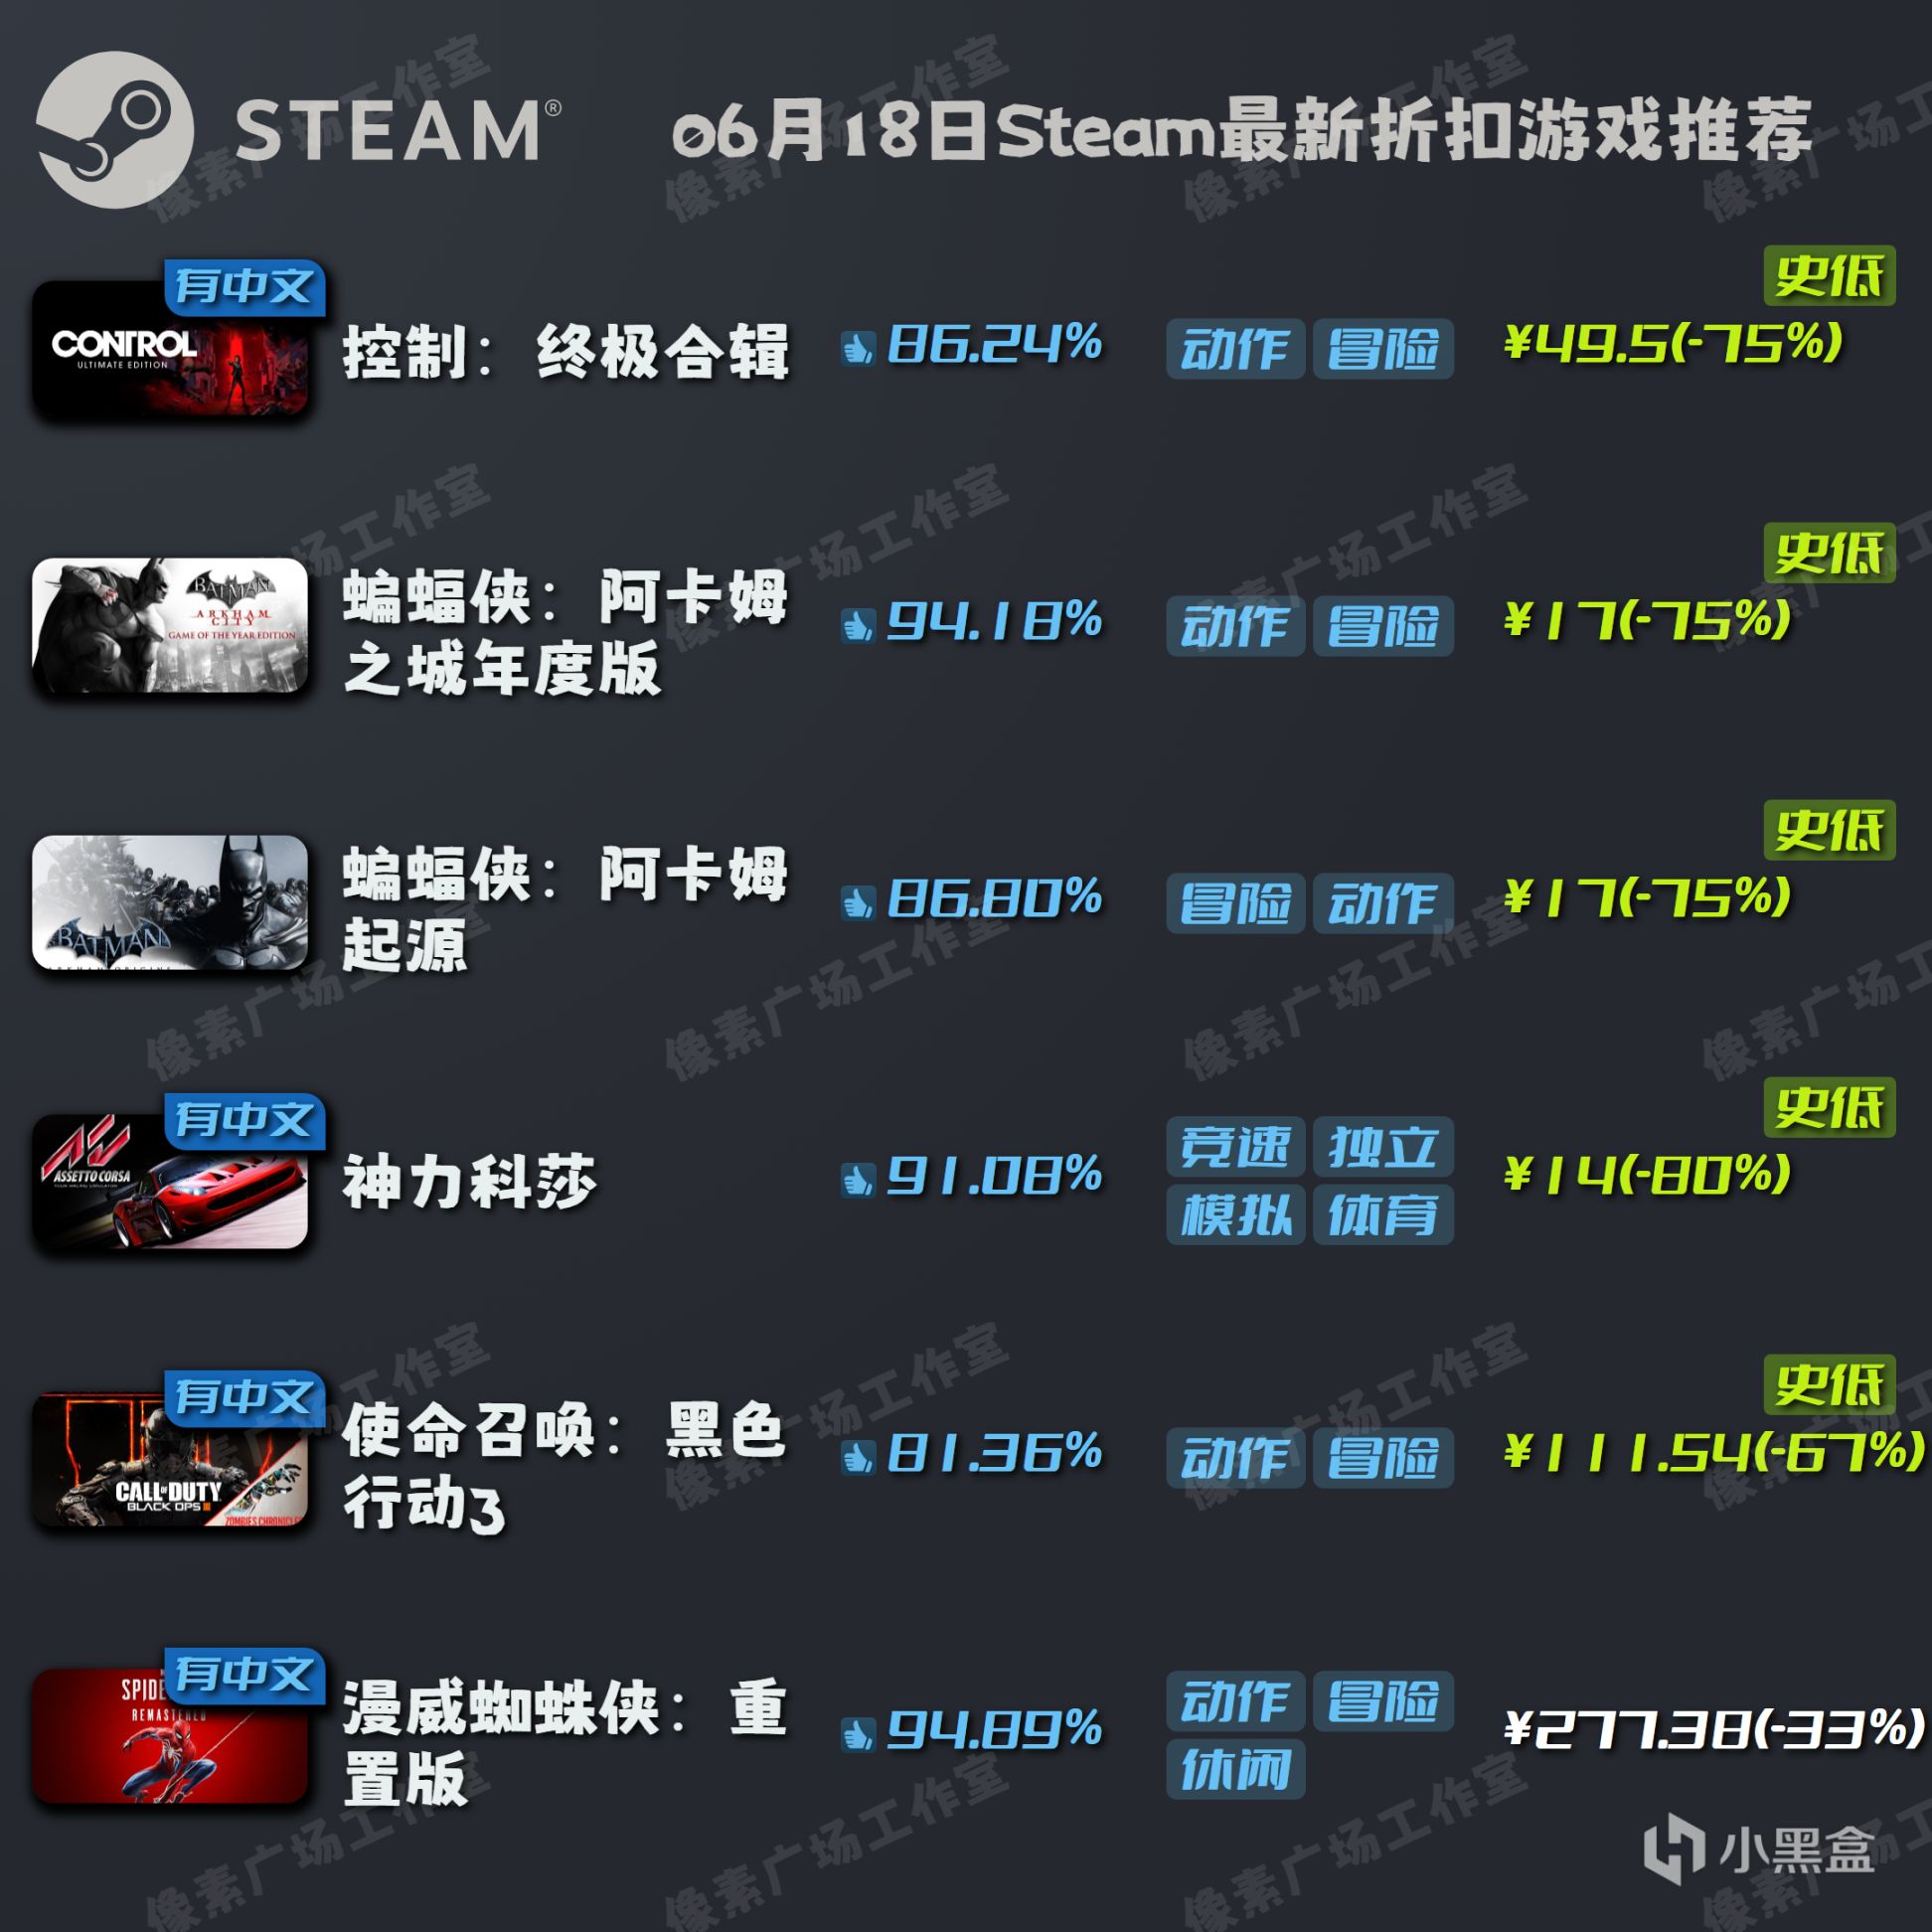 【Steam特惠】6月18日折扣遊戲推薦-第0張